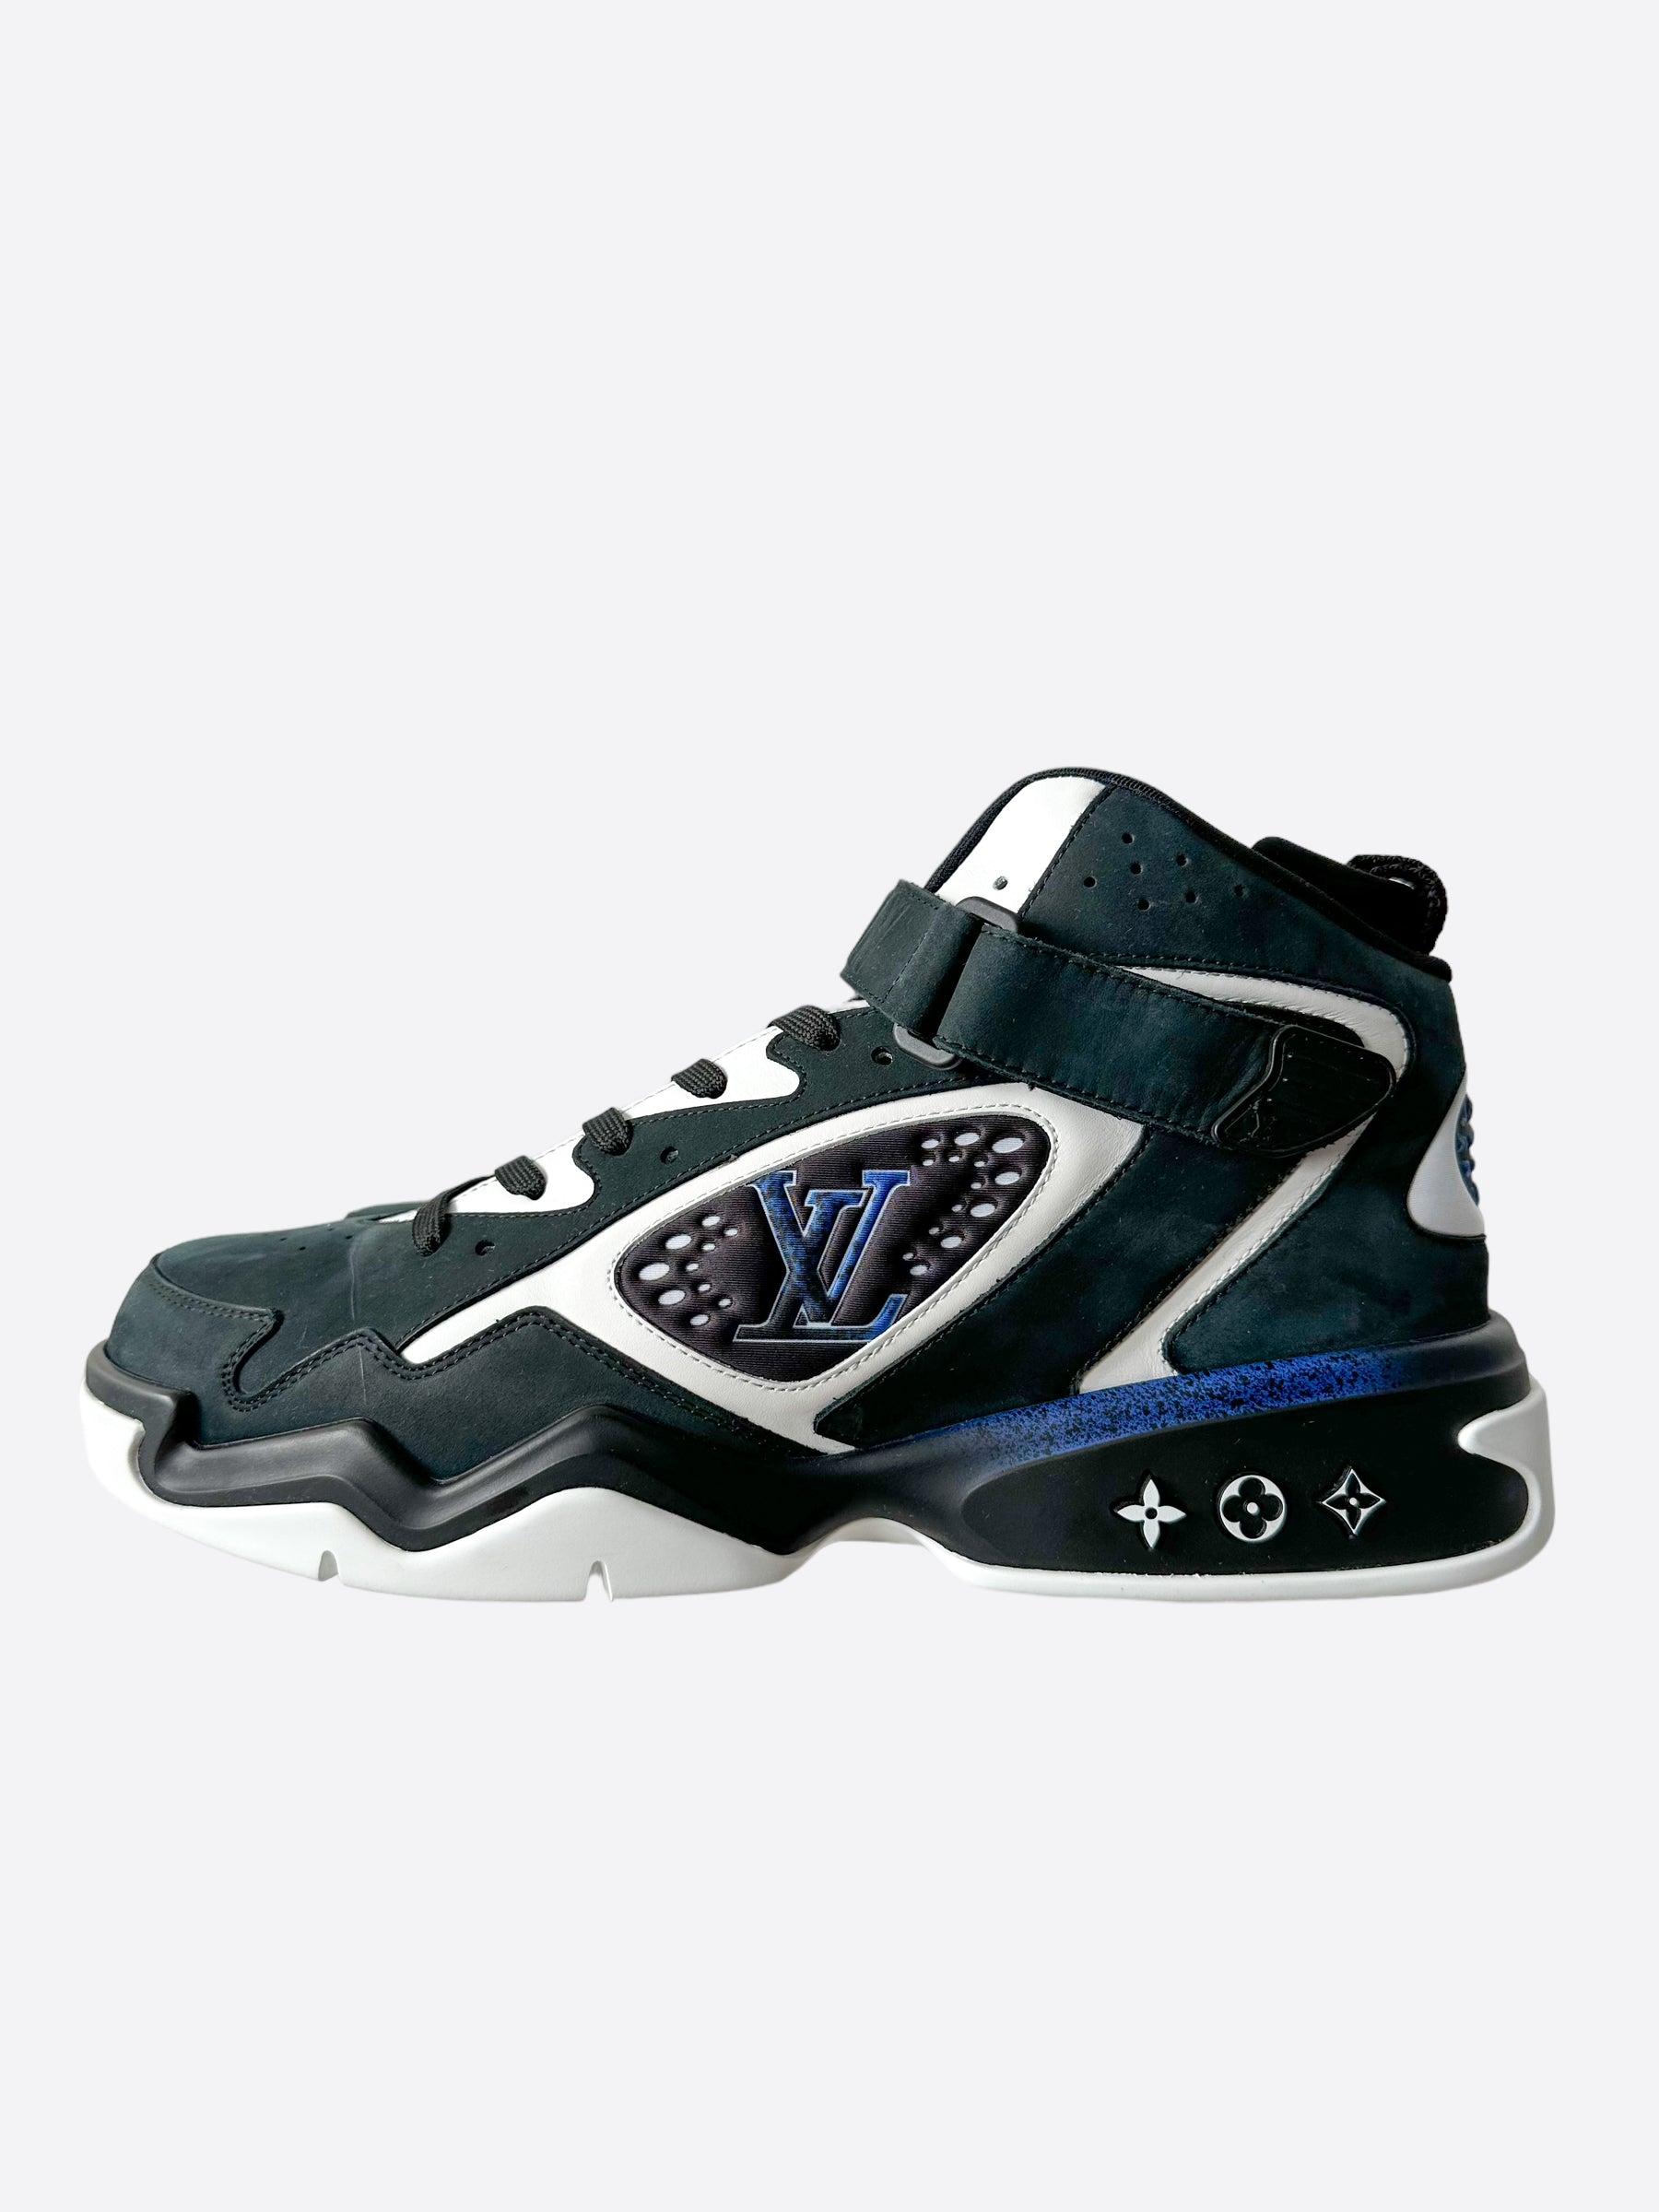 Louis Vuitton LV Trainer Sneaker BLACK. Size 02.5